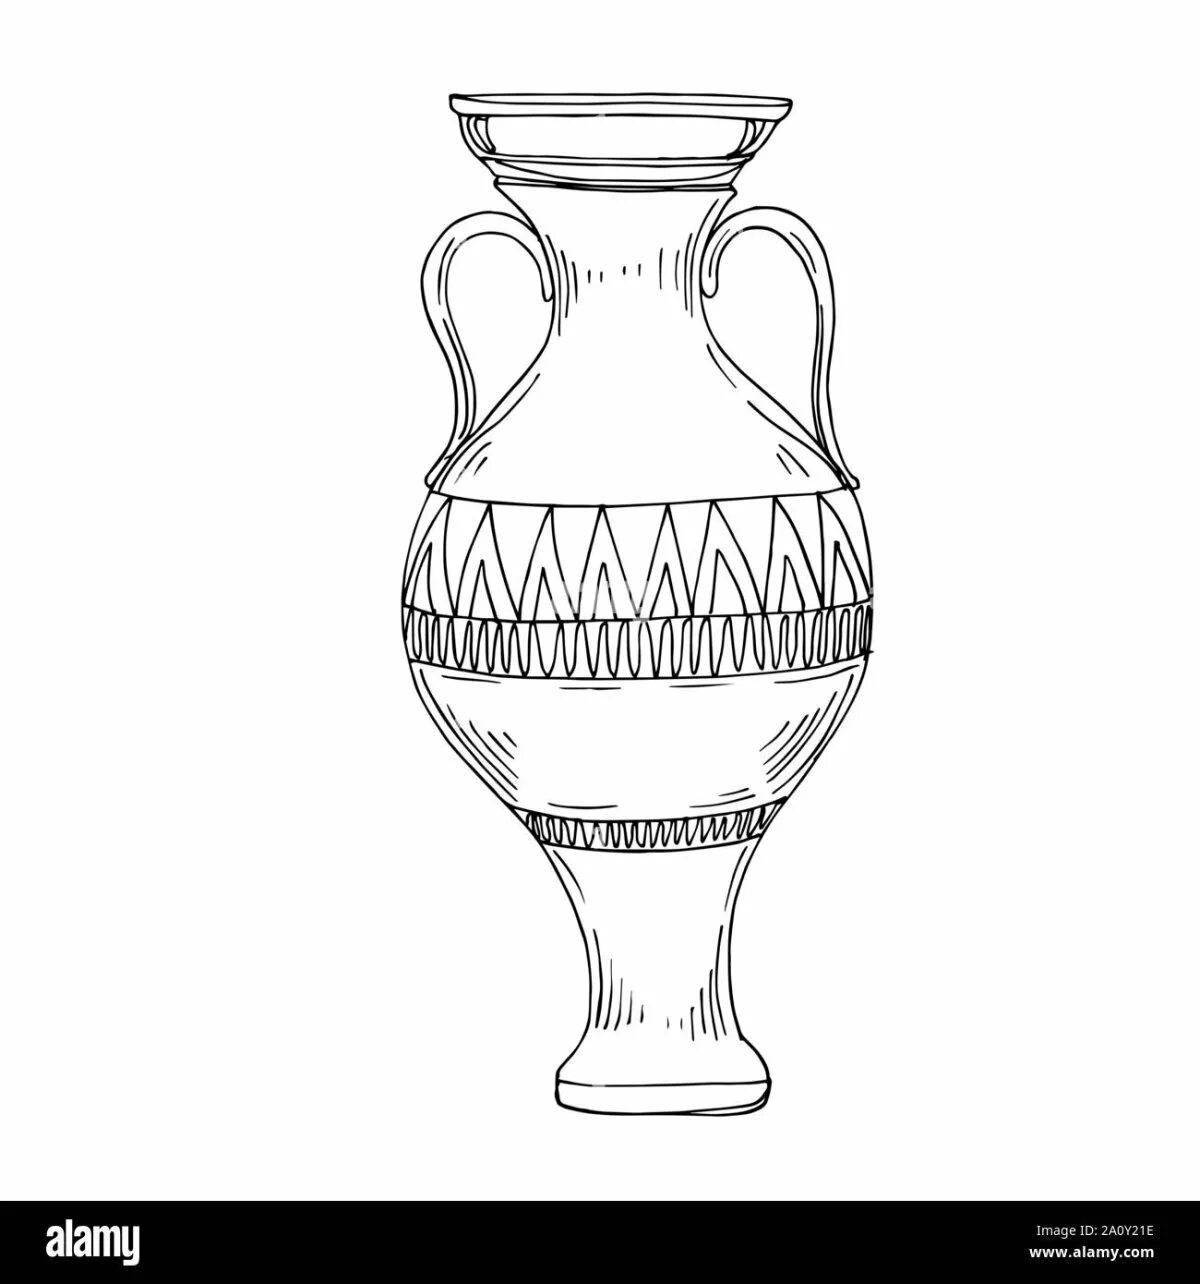 Раскраска драматическая греческая ваза